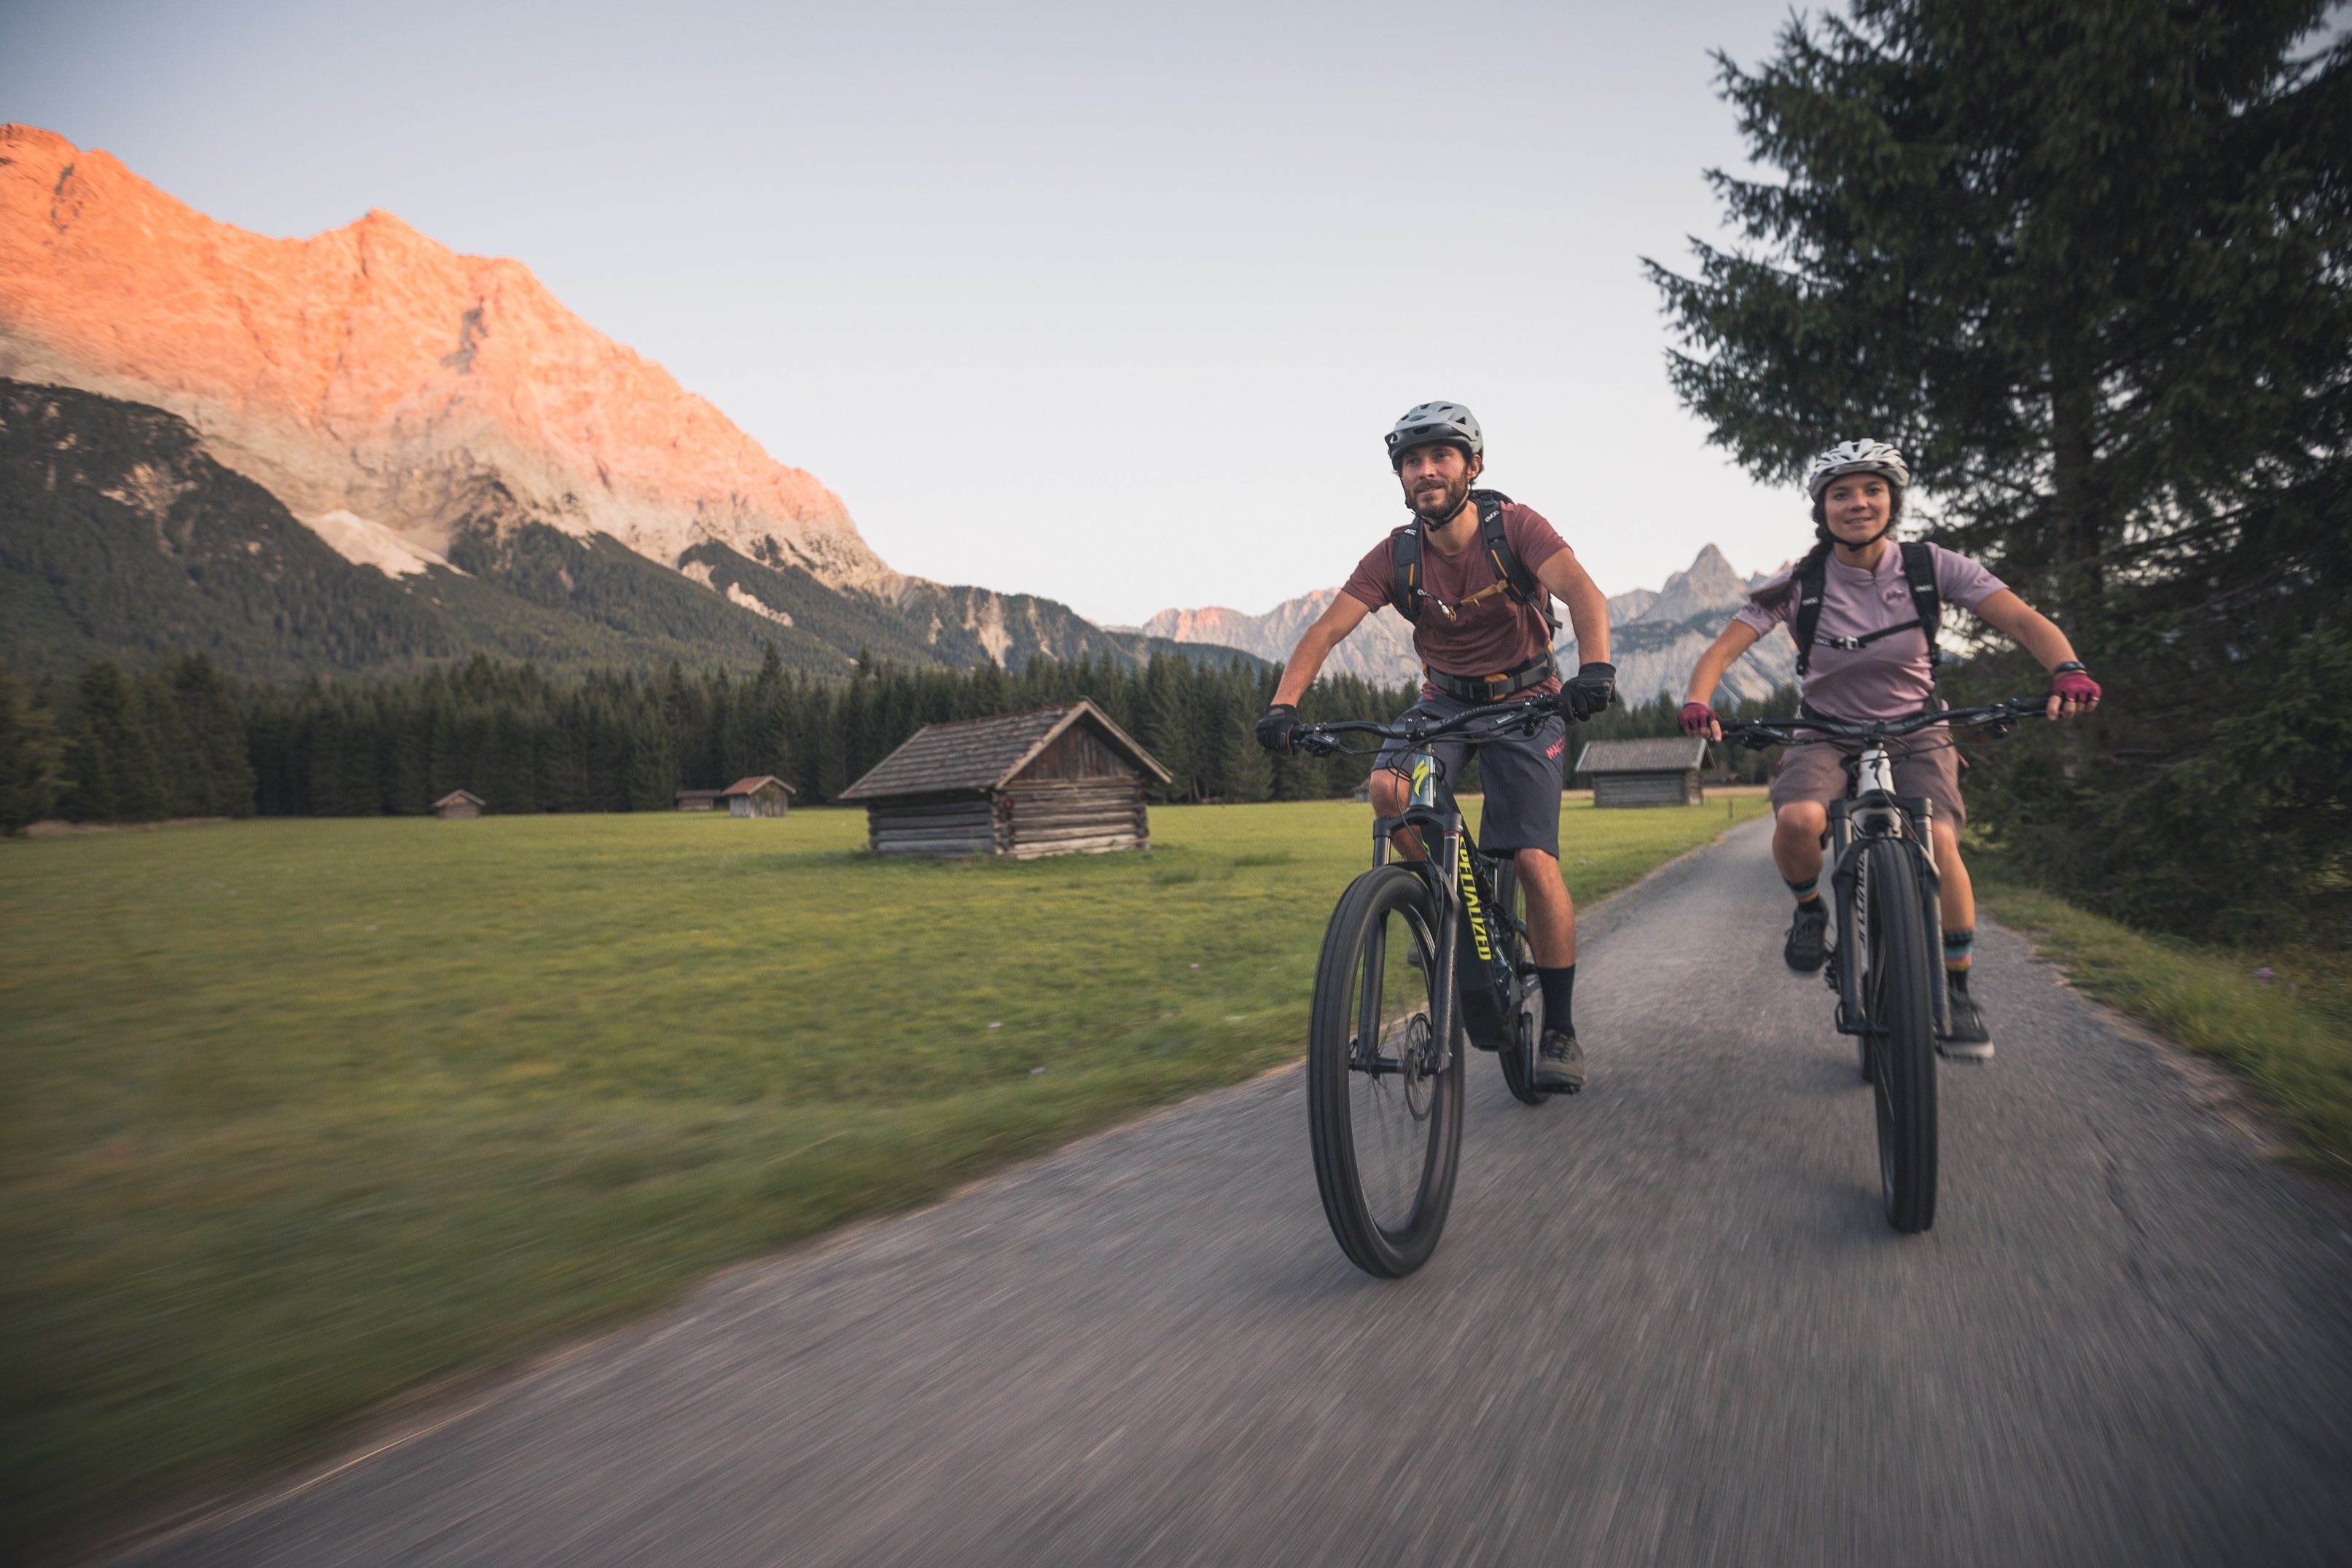 Die Tiroler Zugspitz Arena wartet mit über 100 Touren für Biker auf.